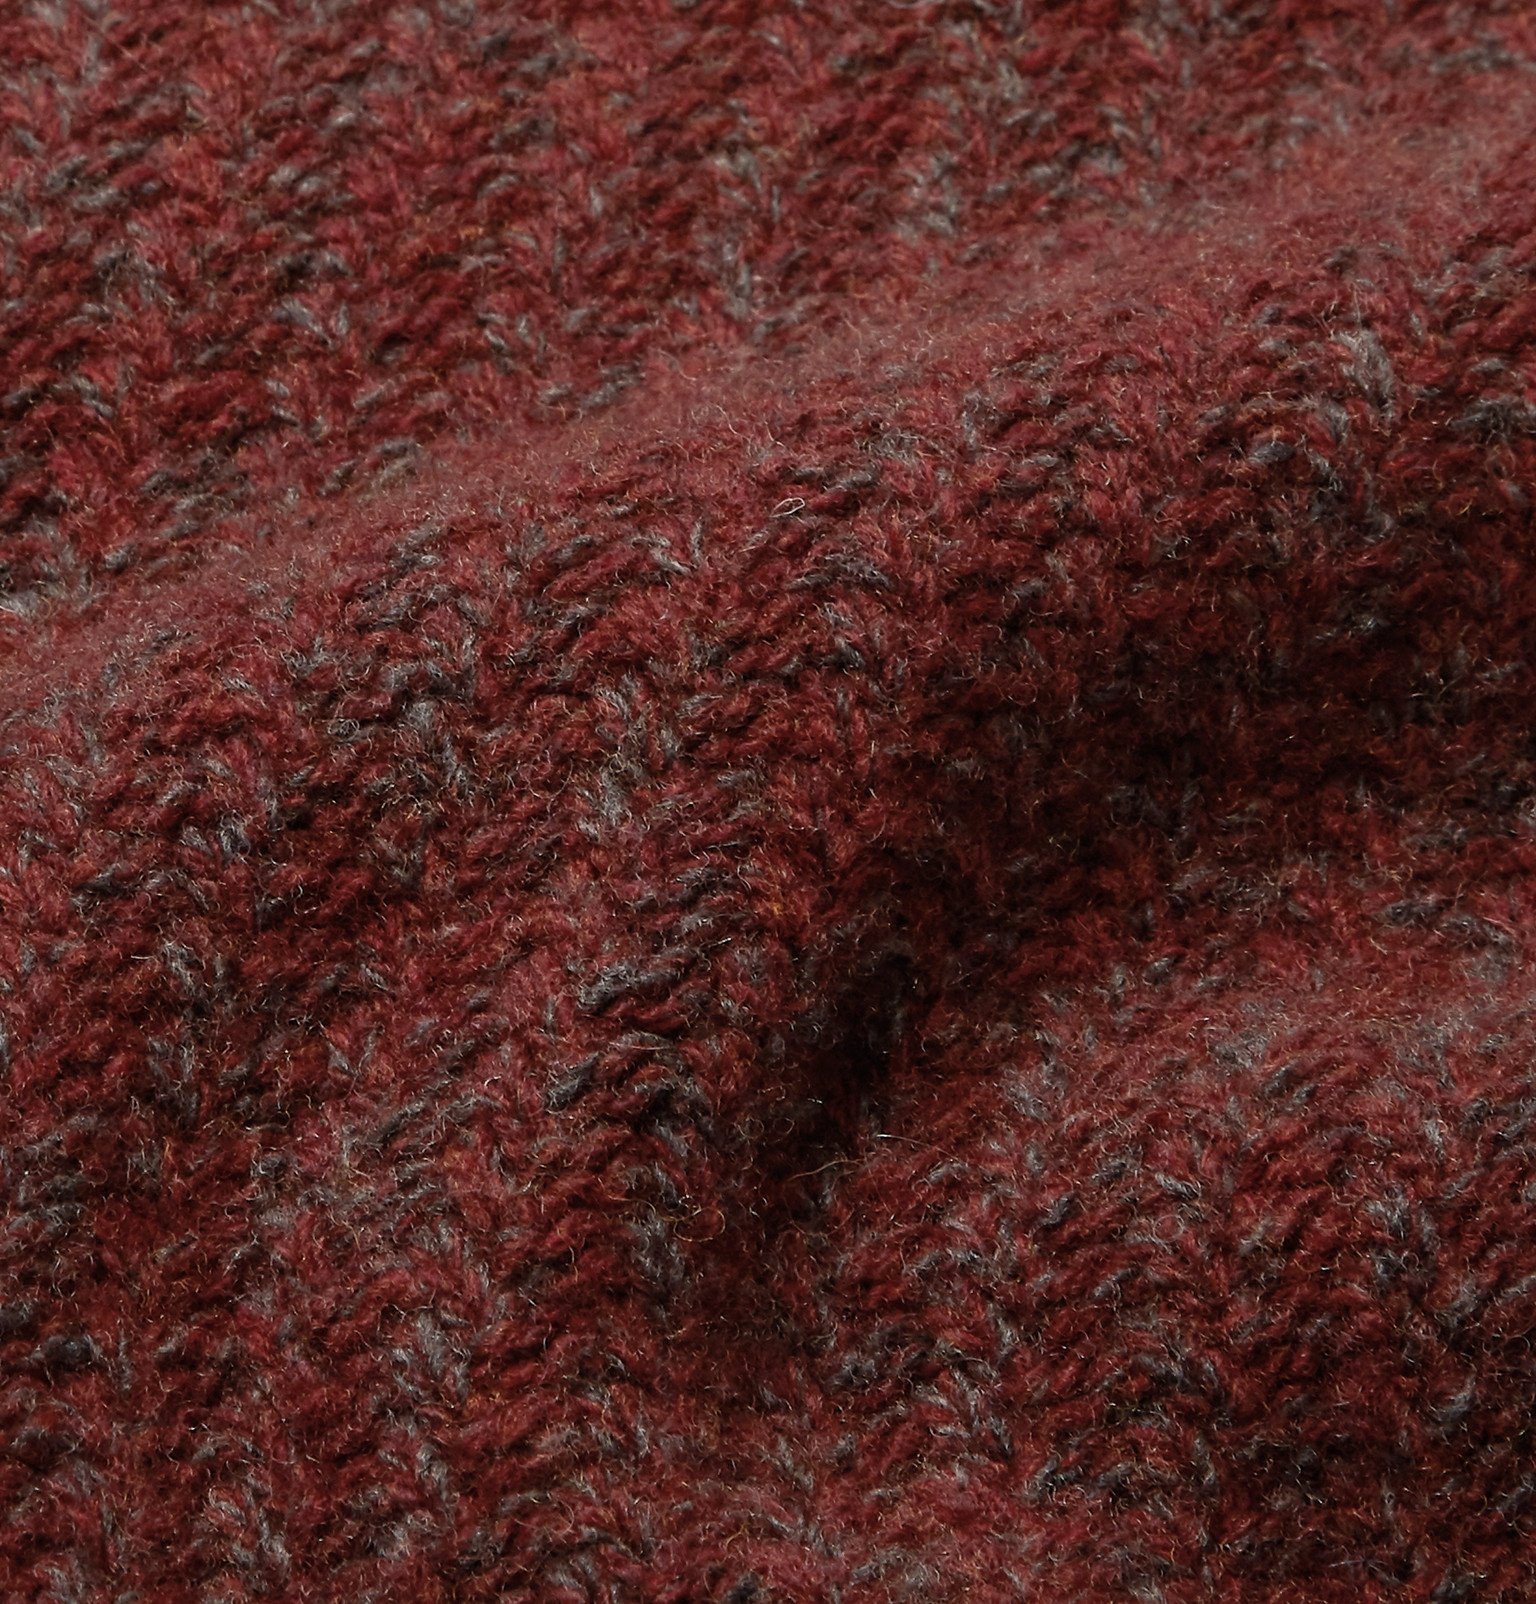 Oliver Spencer - Blenheim Mélange Wool Sweater - Red